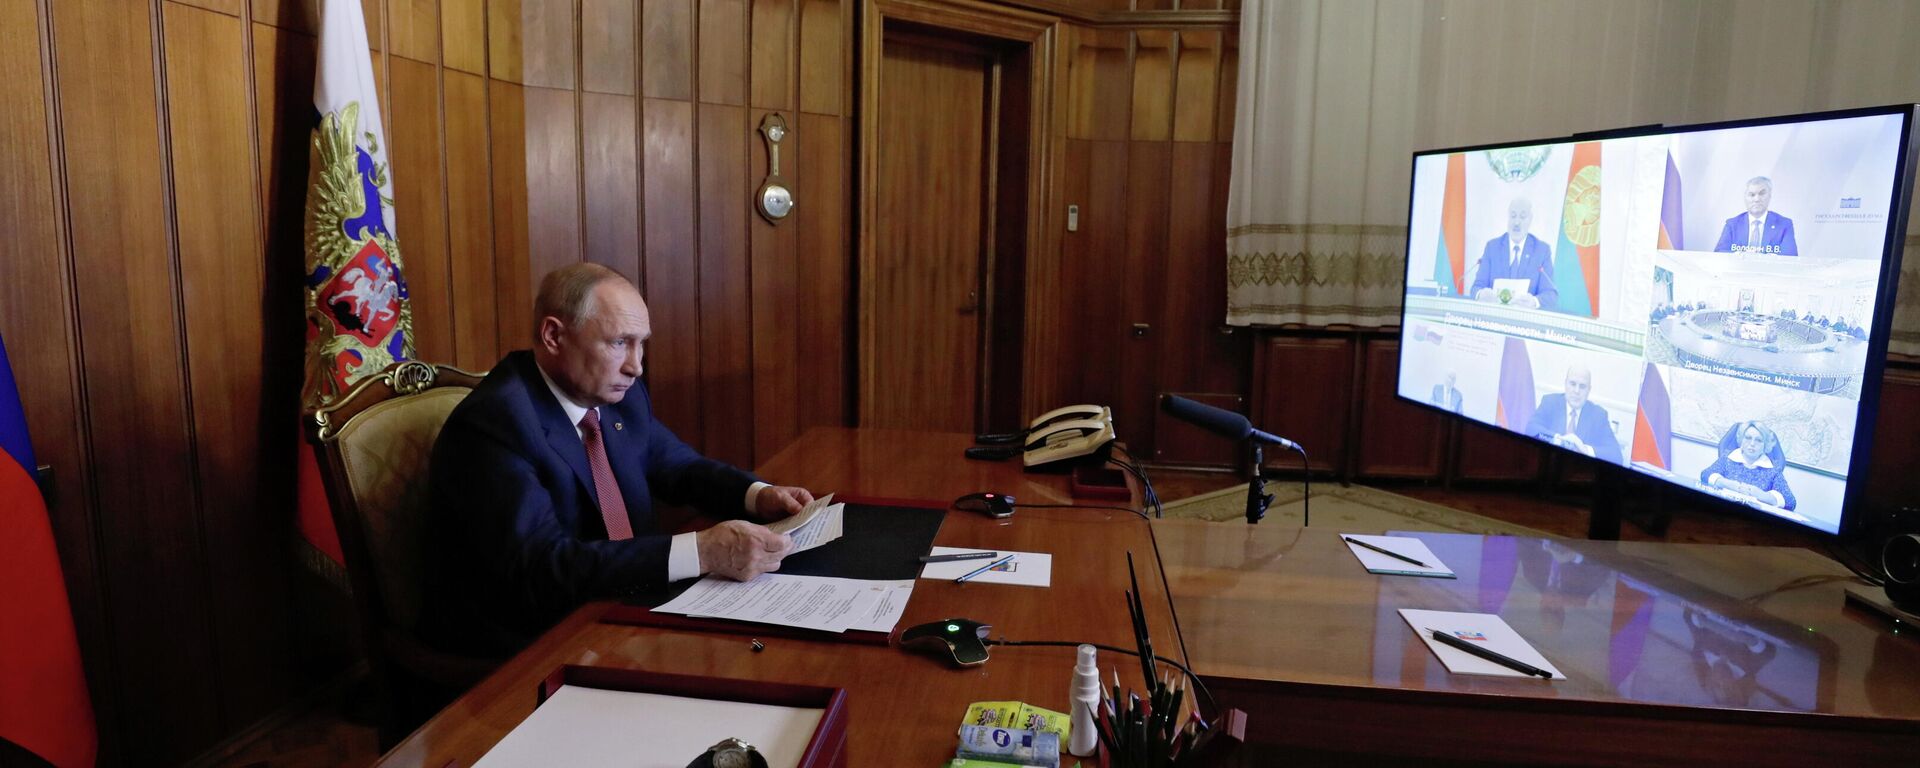 Vladímir Putin, presidente de Rusia en la reunión del Consejo Supremo del Estado de la Unión - Sputnik Mundo, 1920, 04.11.2021